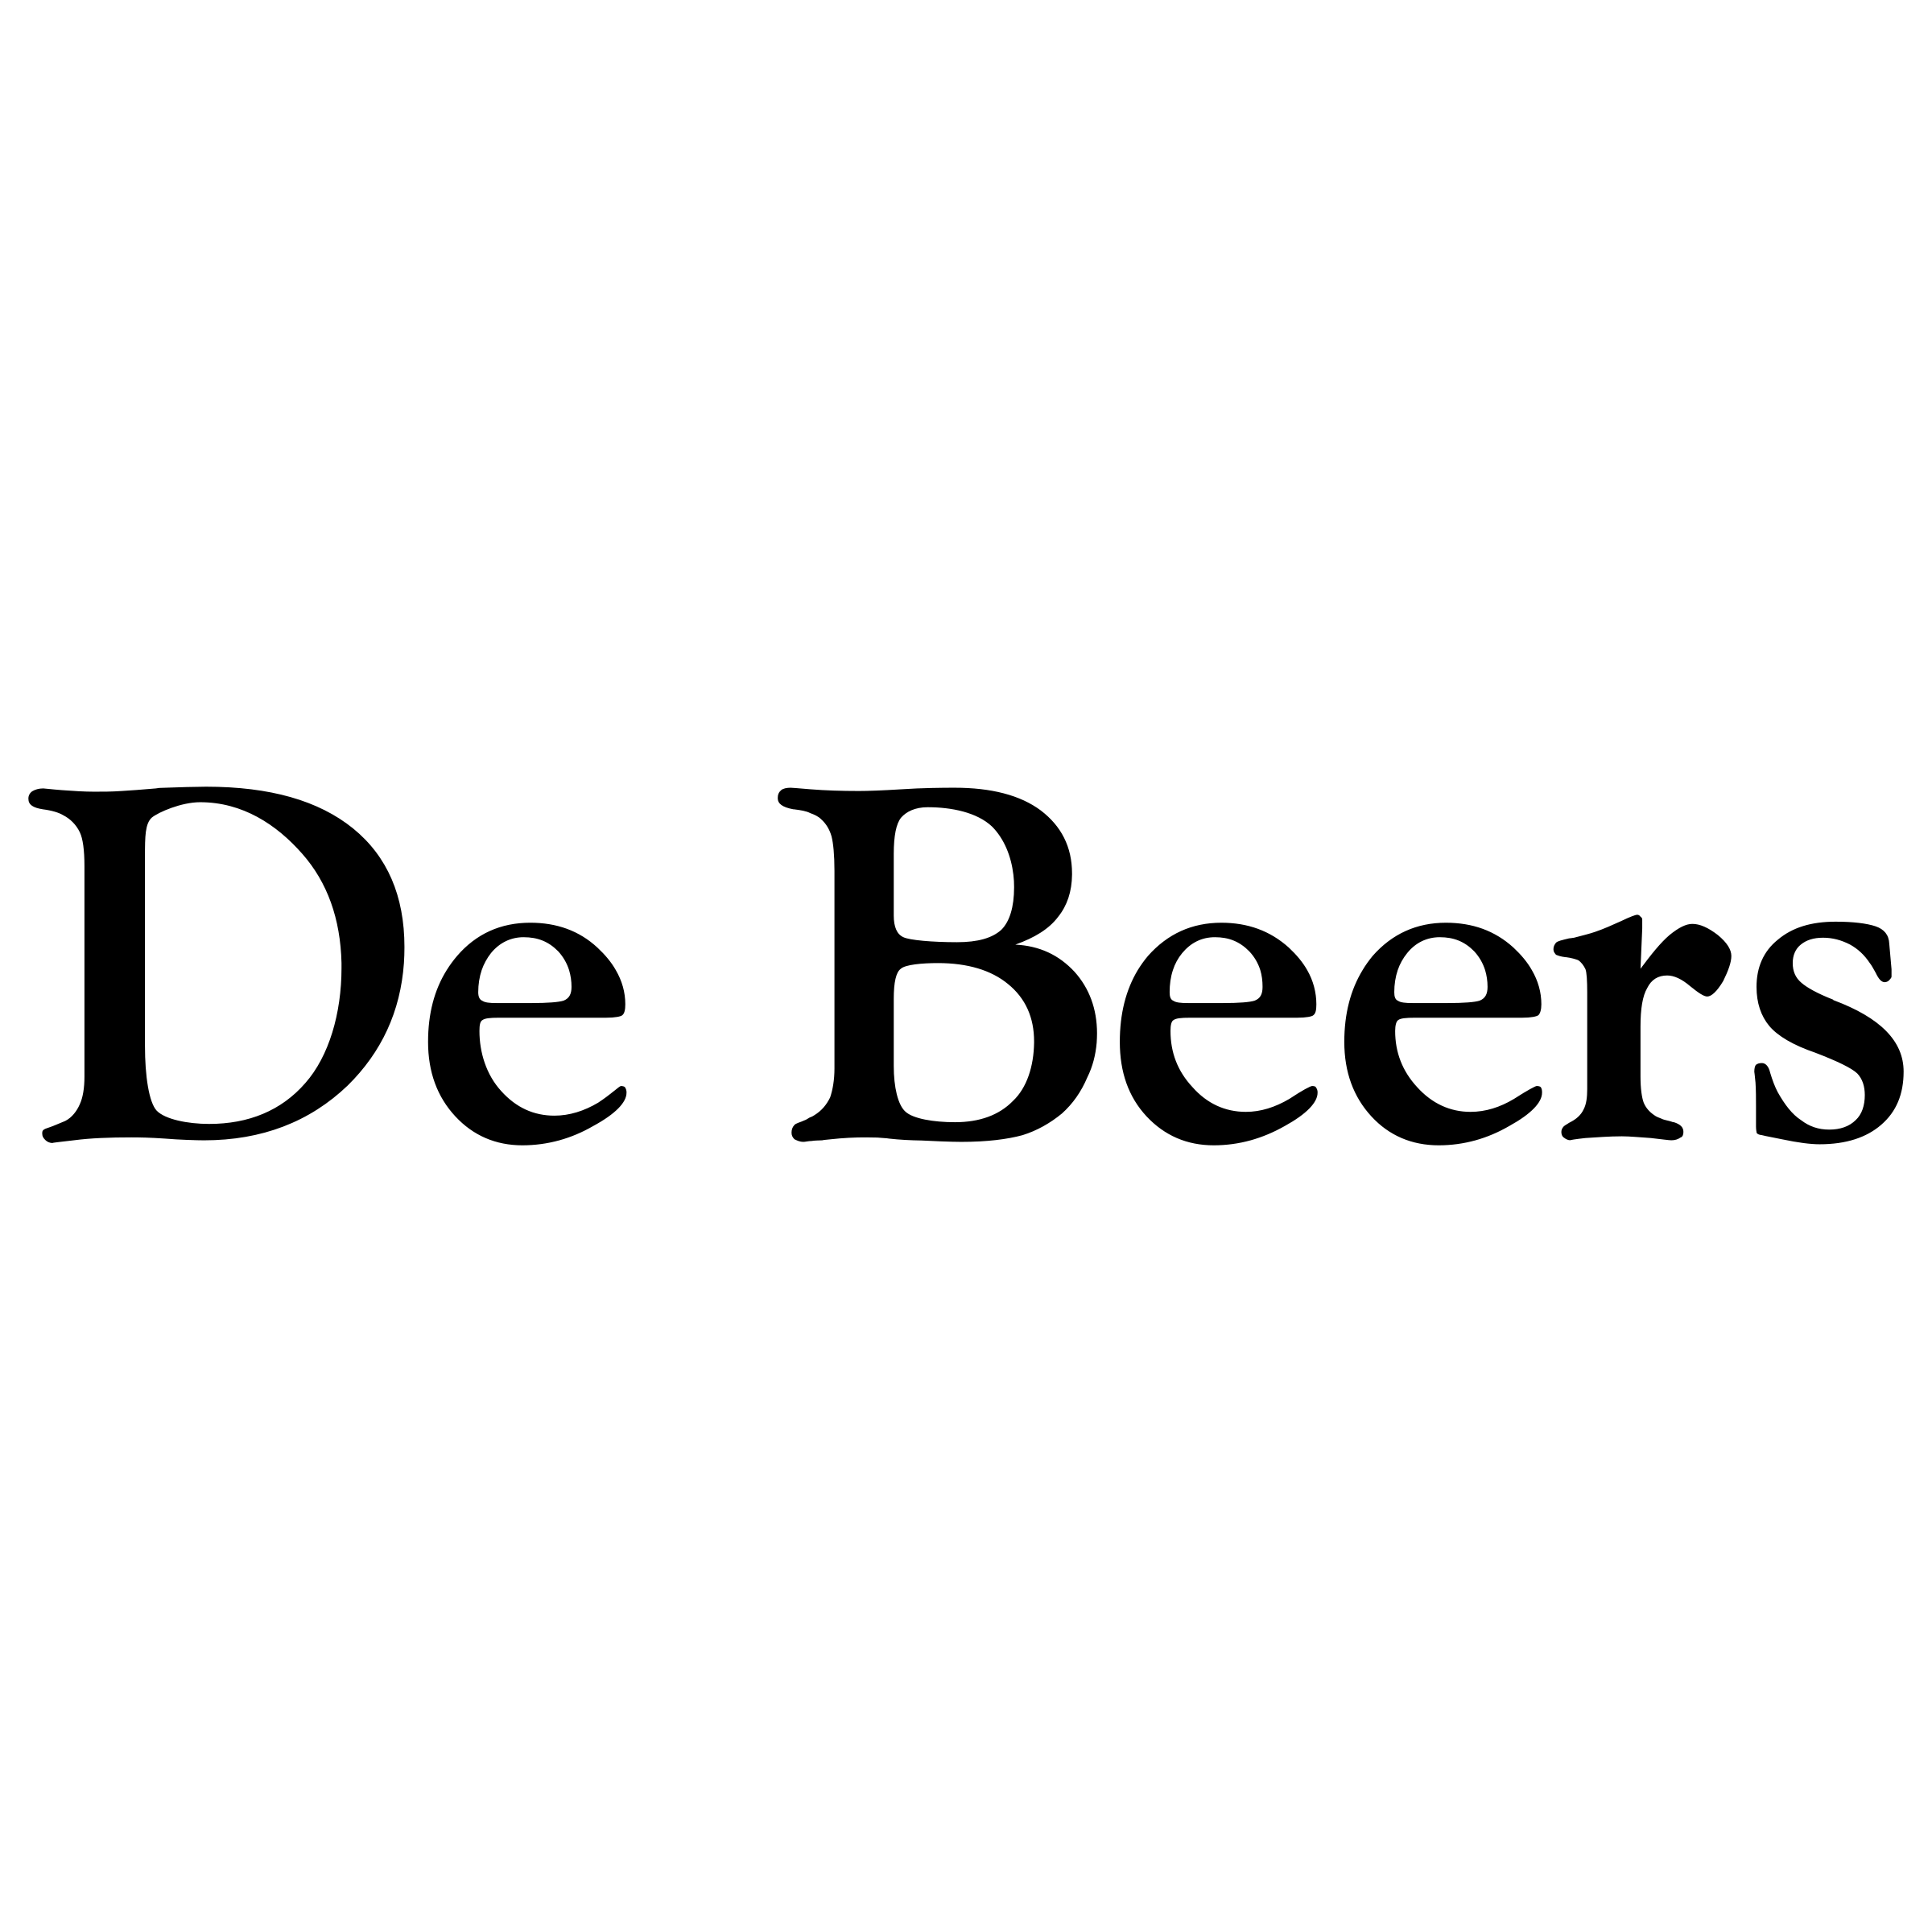 Beers Logo - De Beers Logo PNG Transparent & SVG Vector - Freebie Supply